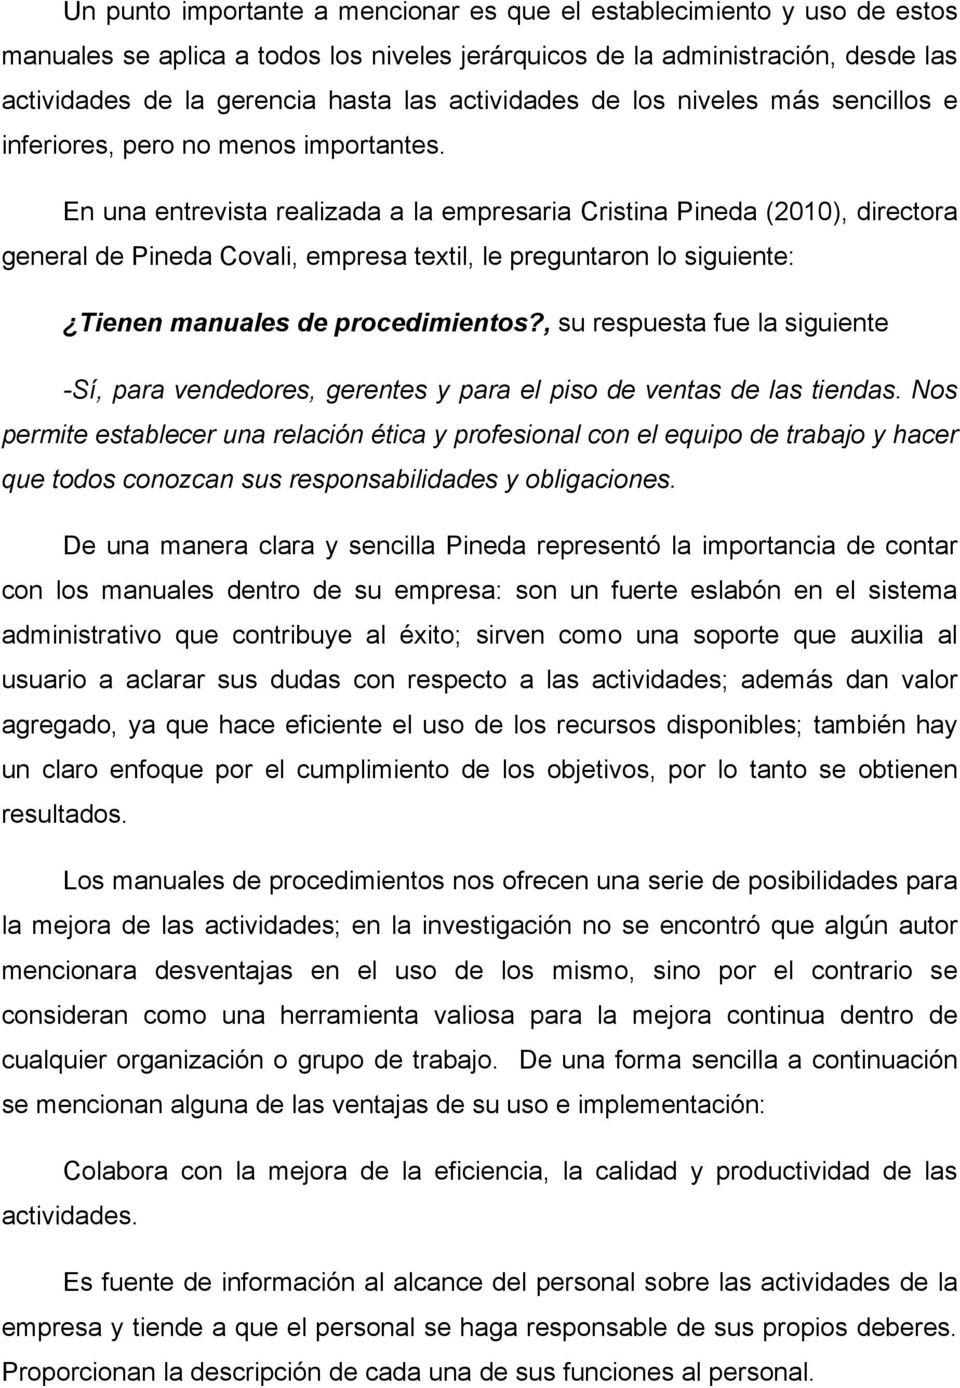 En una entrevista realizada a la empresaria Cristina Pineda (2010), directora general de Pineda Covali, empresa textil, le preguntaron lo siguiente: Tienen manuales de procedimientos?